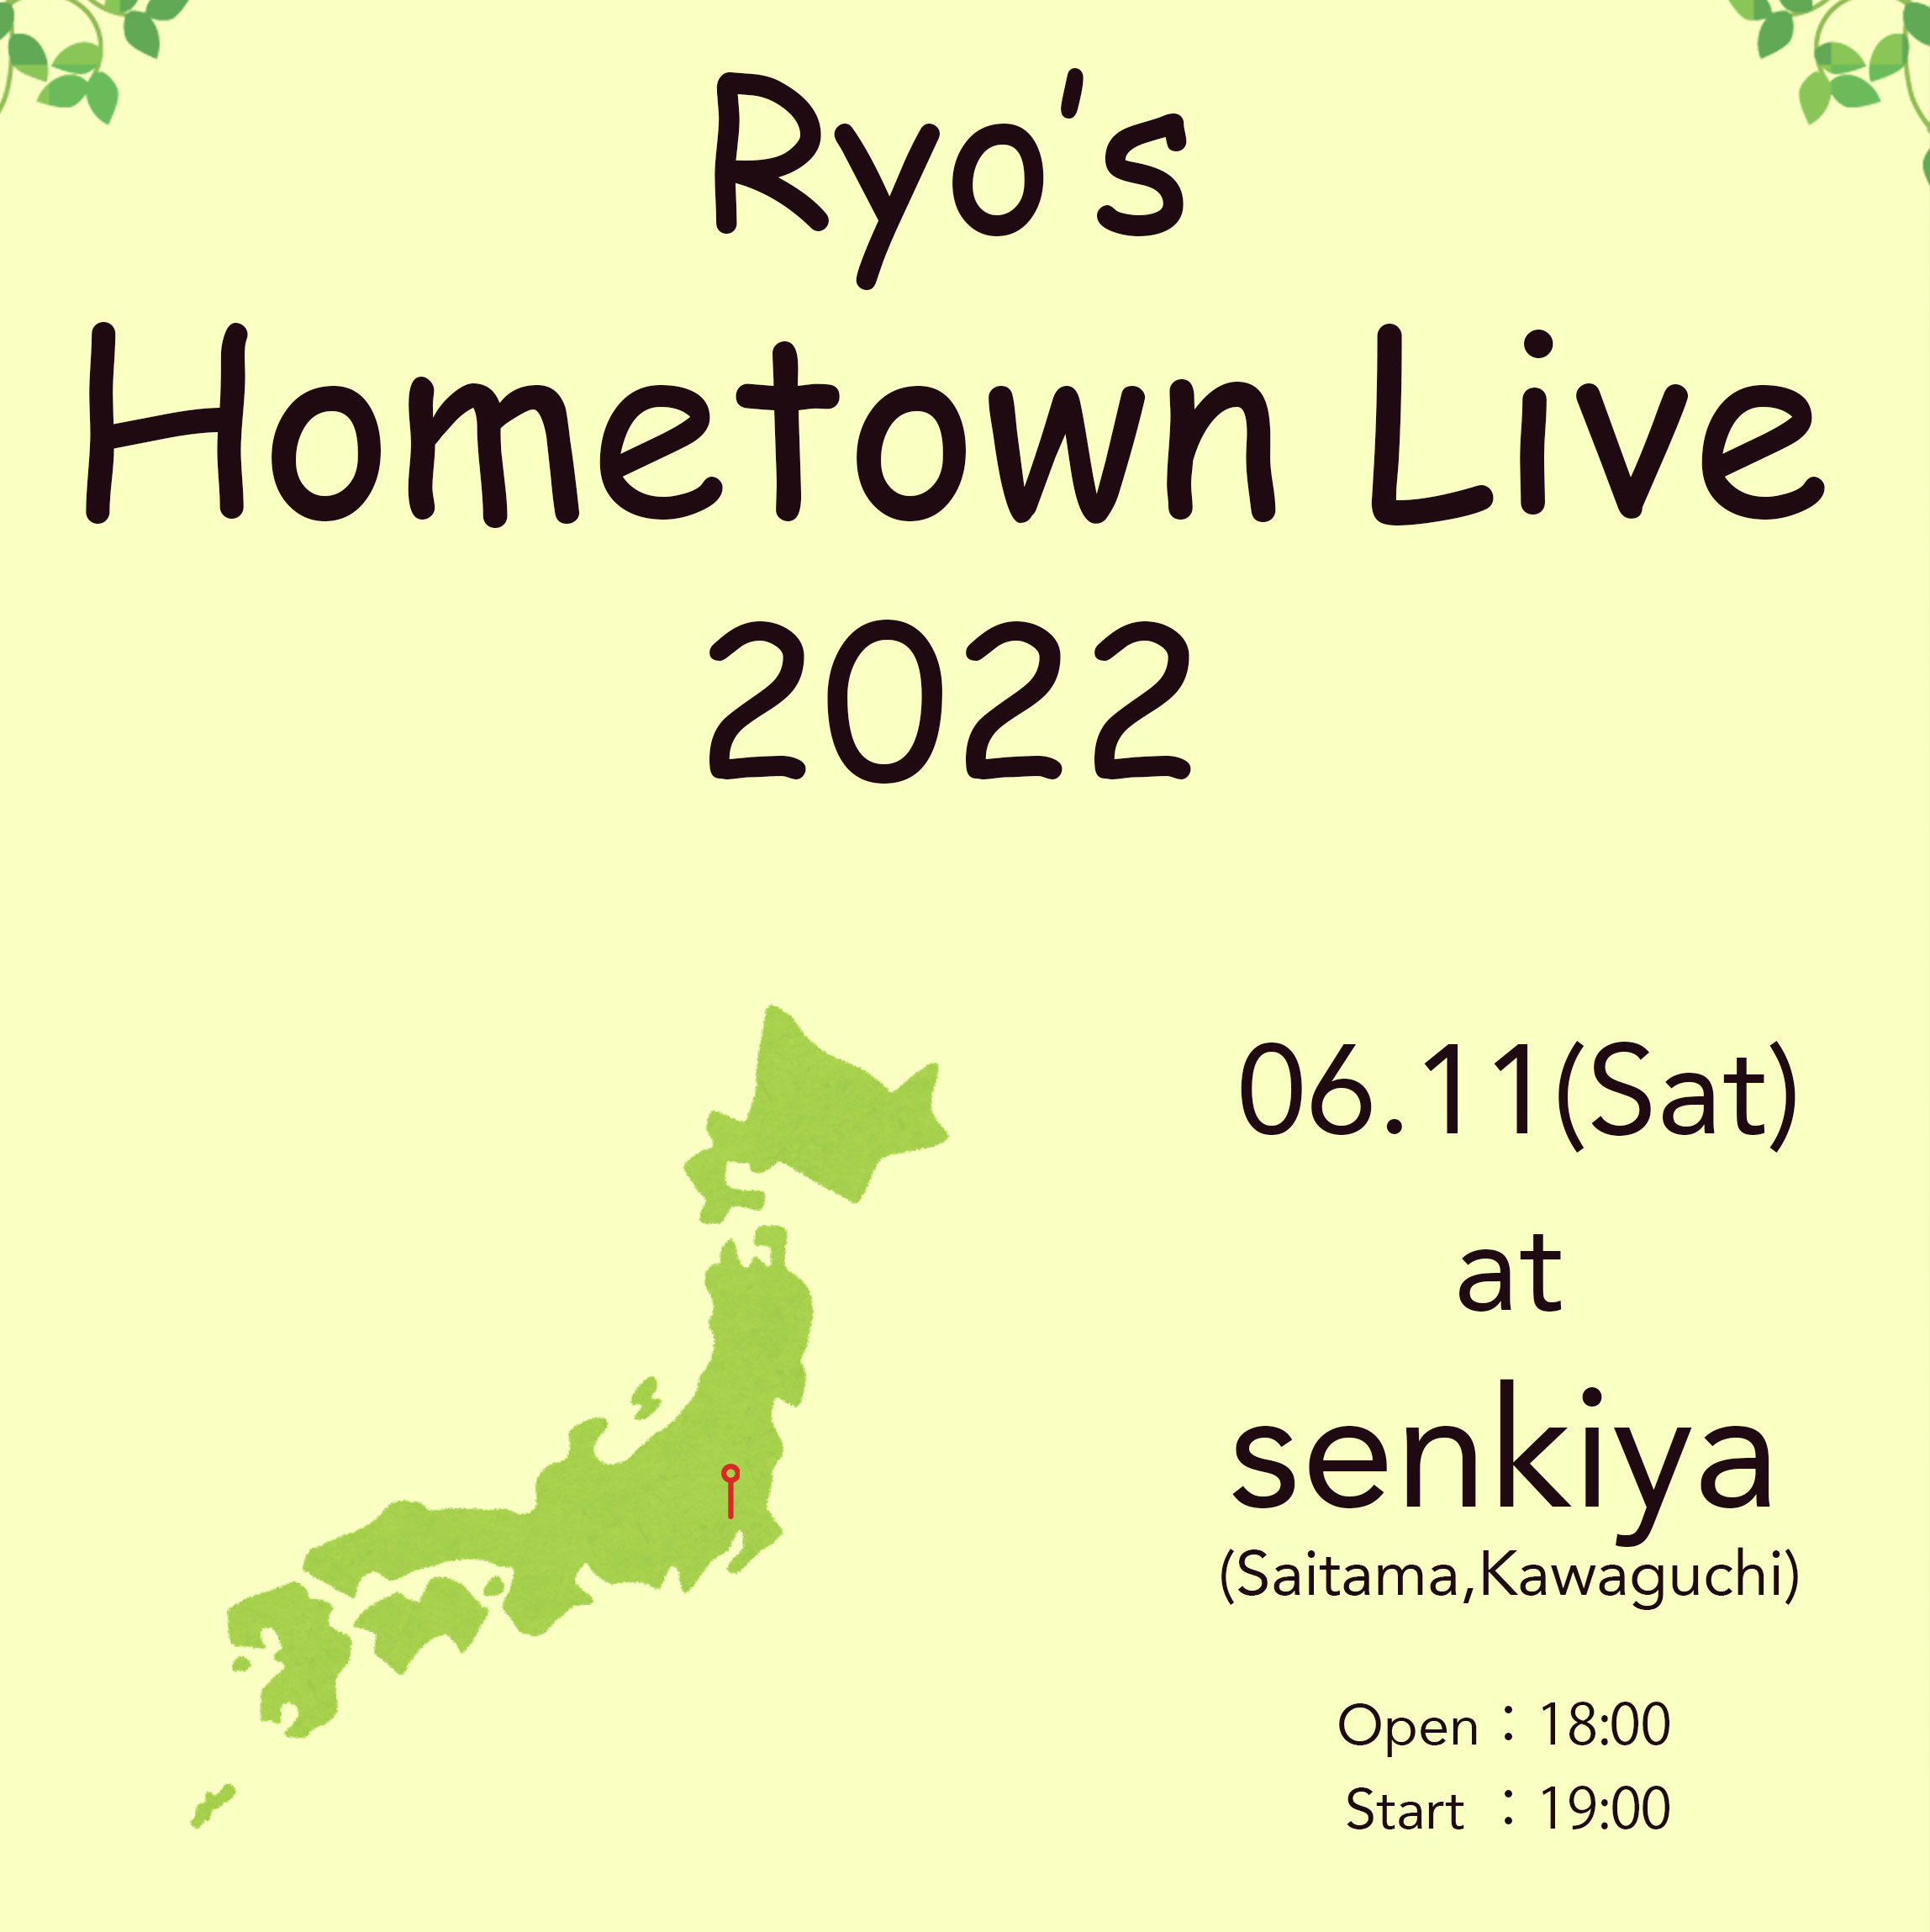 【4月27日更新】Ryo’s Hometown Live 2022 開催決定のご案内